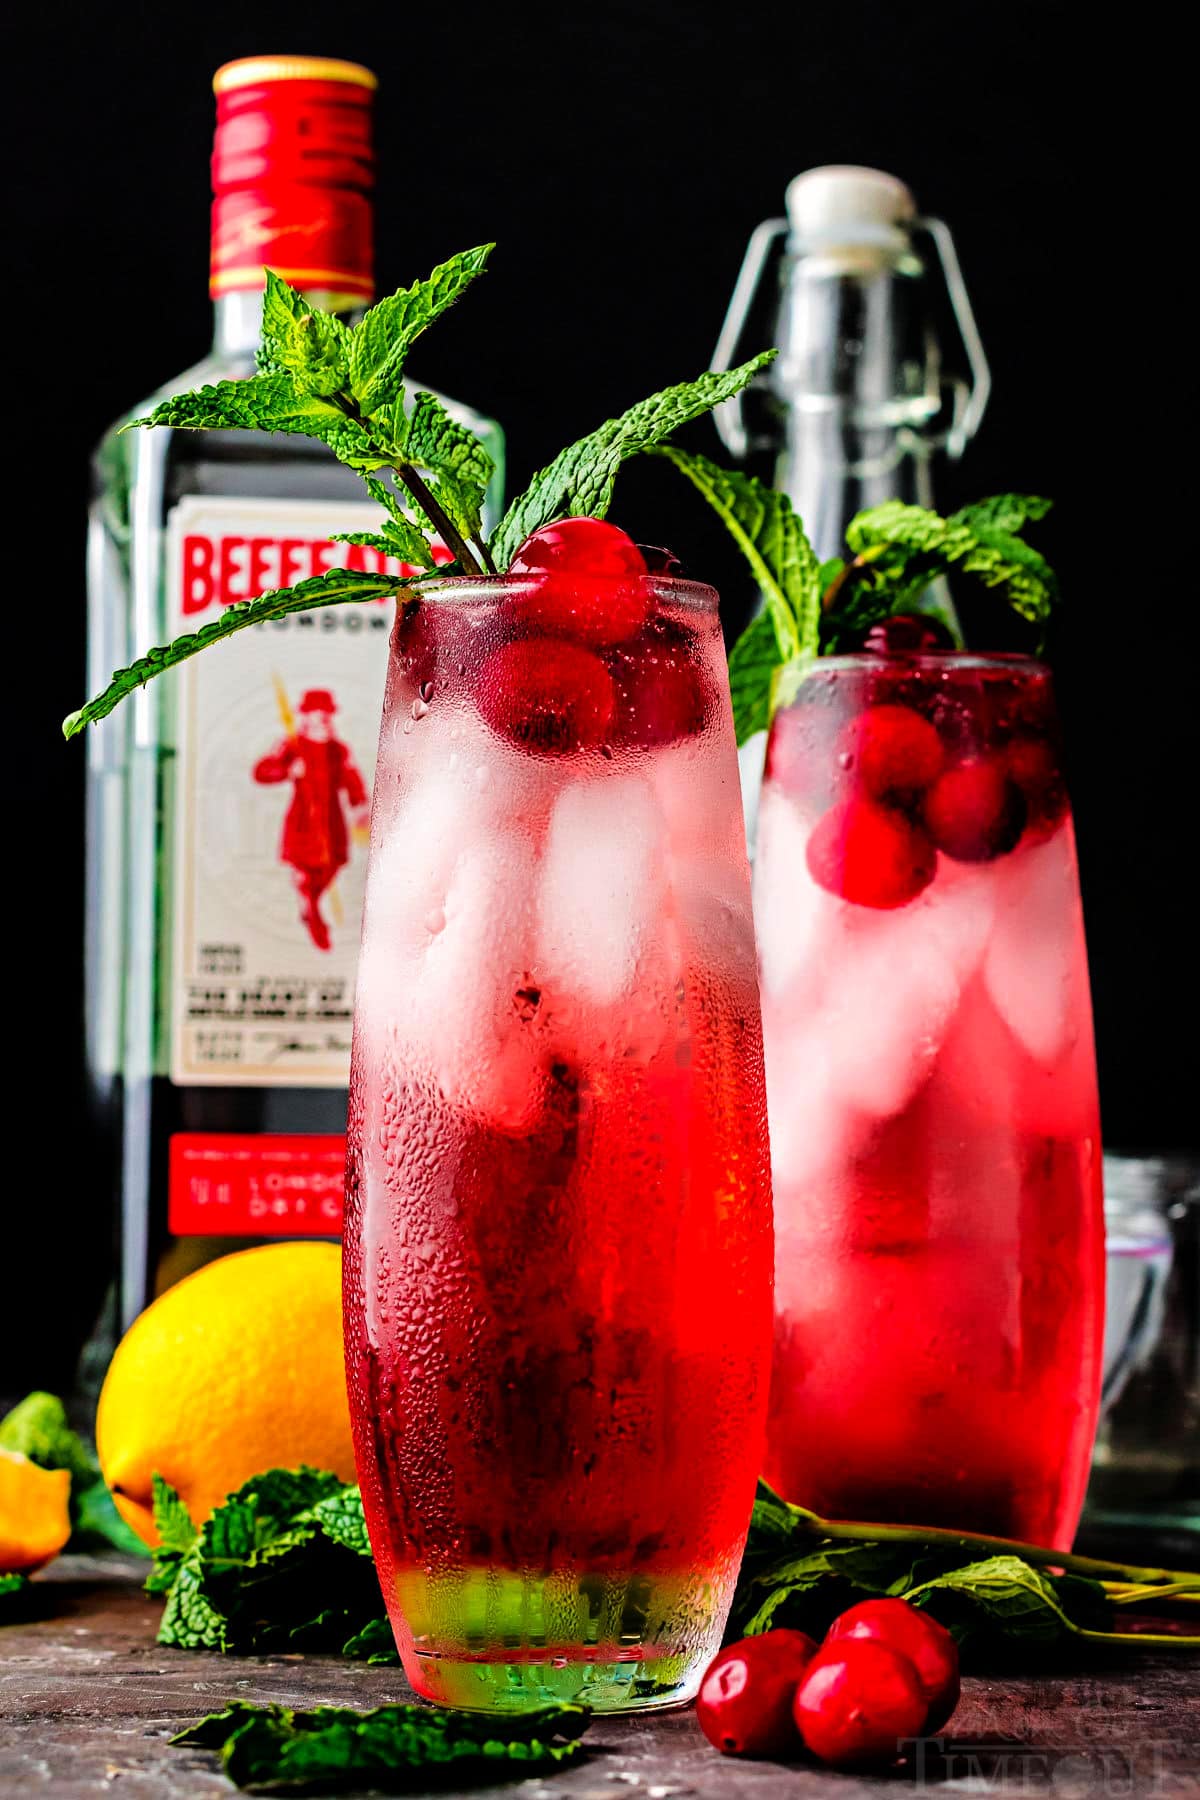 due cocktail di gin al mirtillo rosso davanti a una bottiglia di gin con contorno di menta fresca e limoni seduti nelle vicinanze.